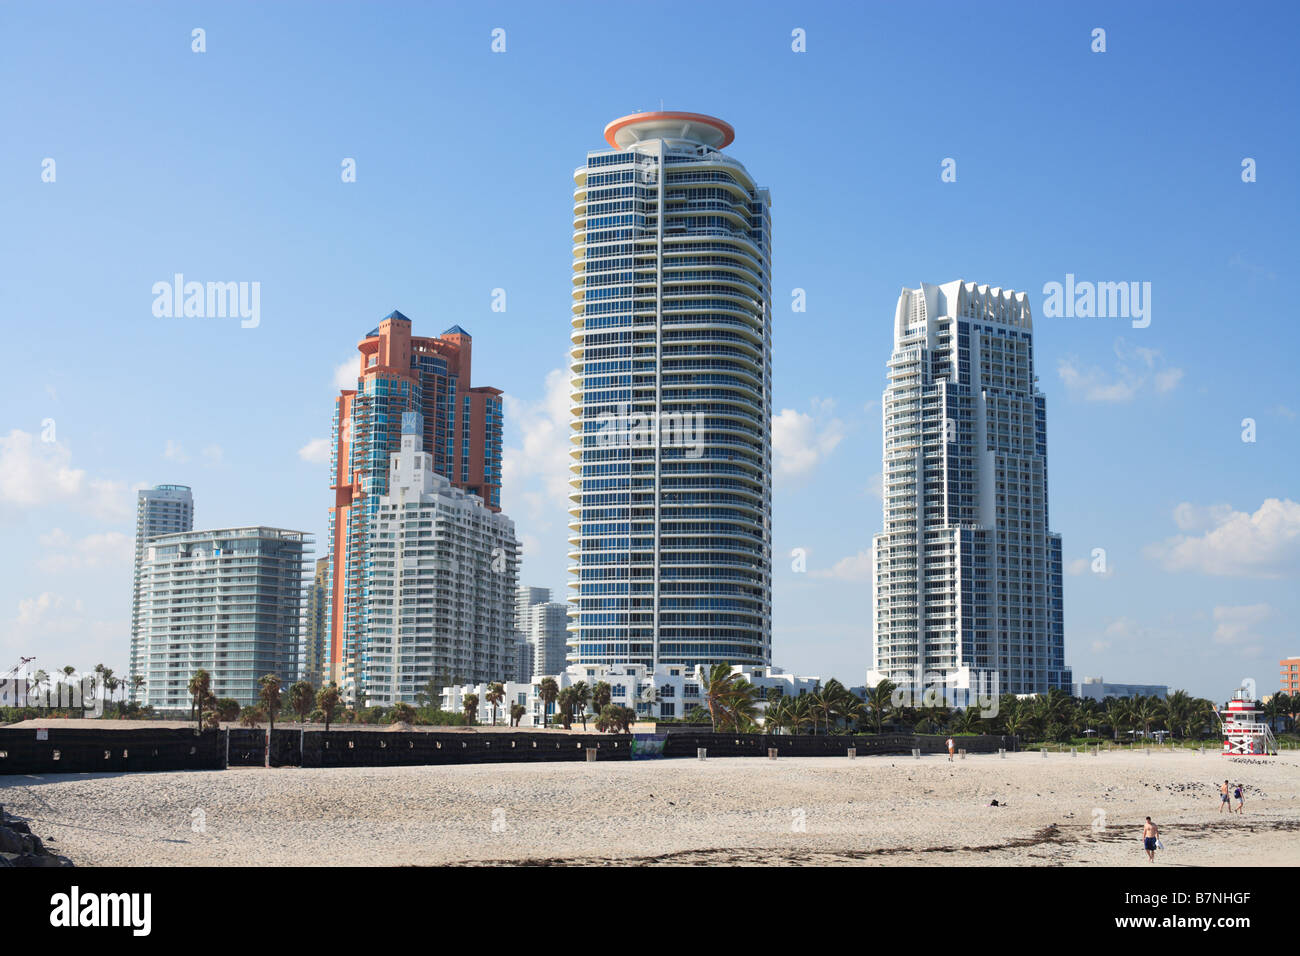 High-rise architecture on Miami Beach Florida. Stock Photo